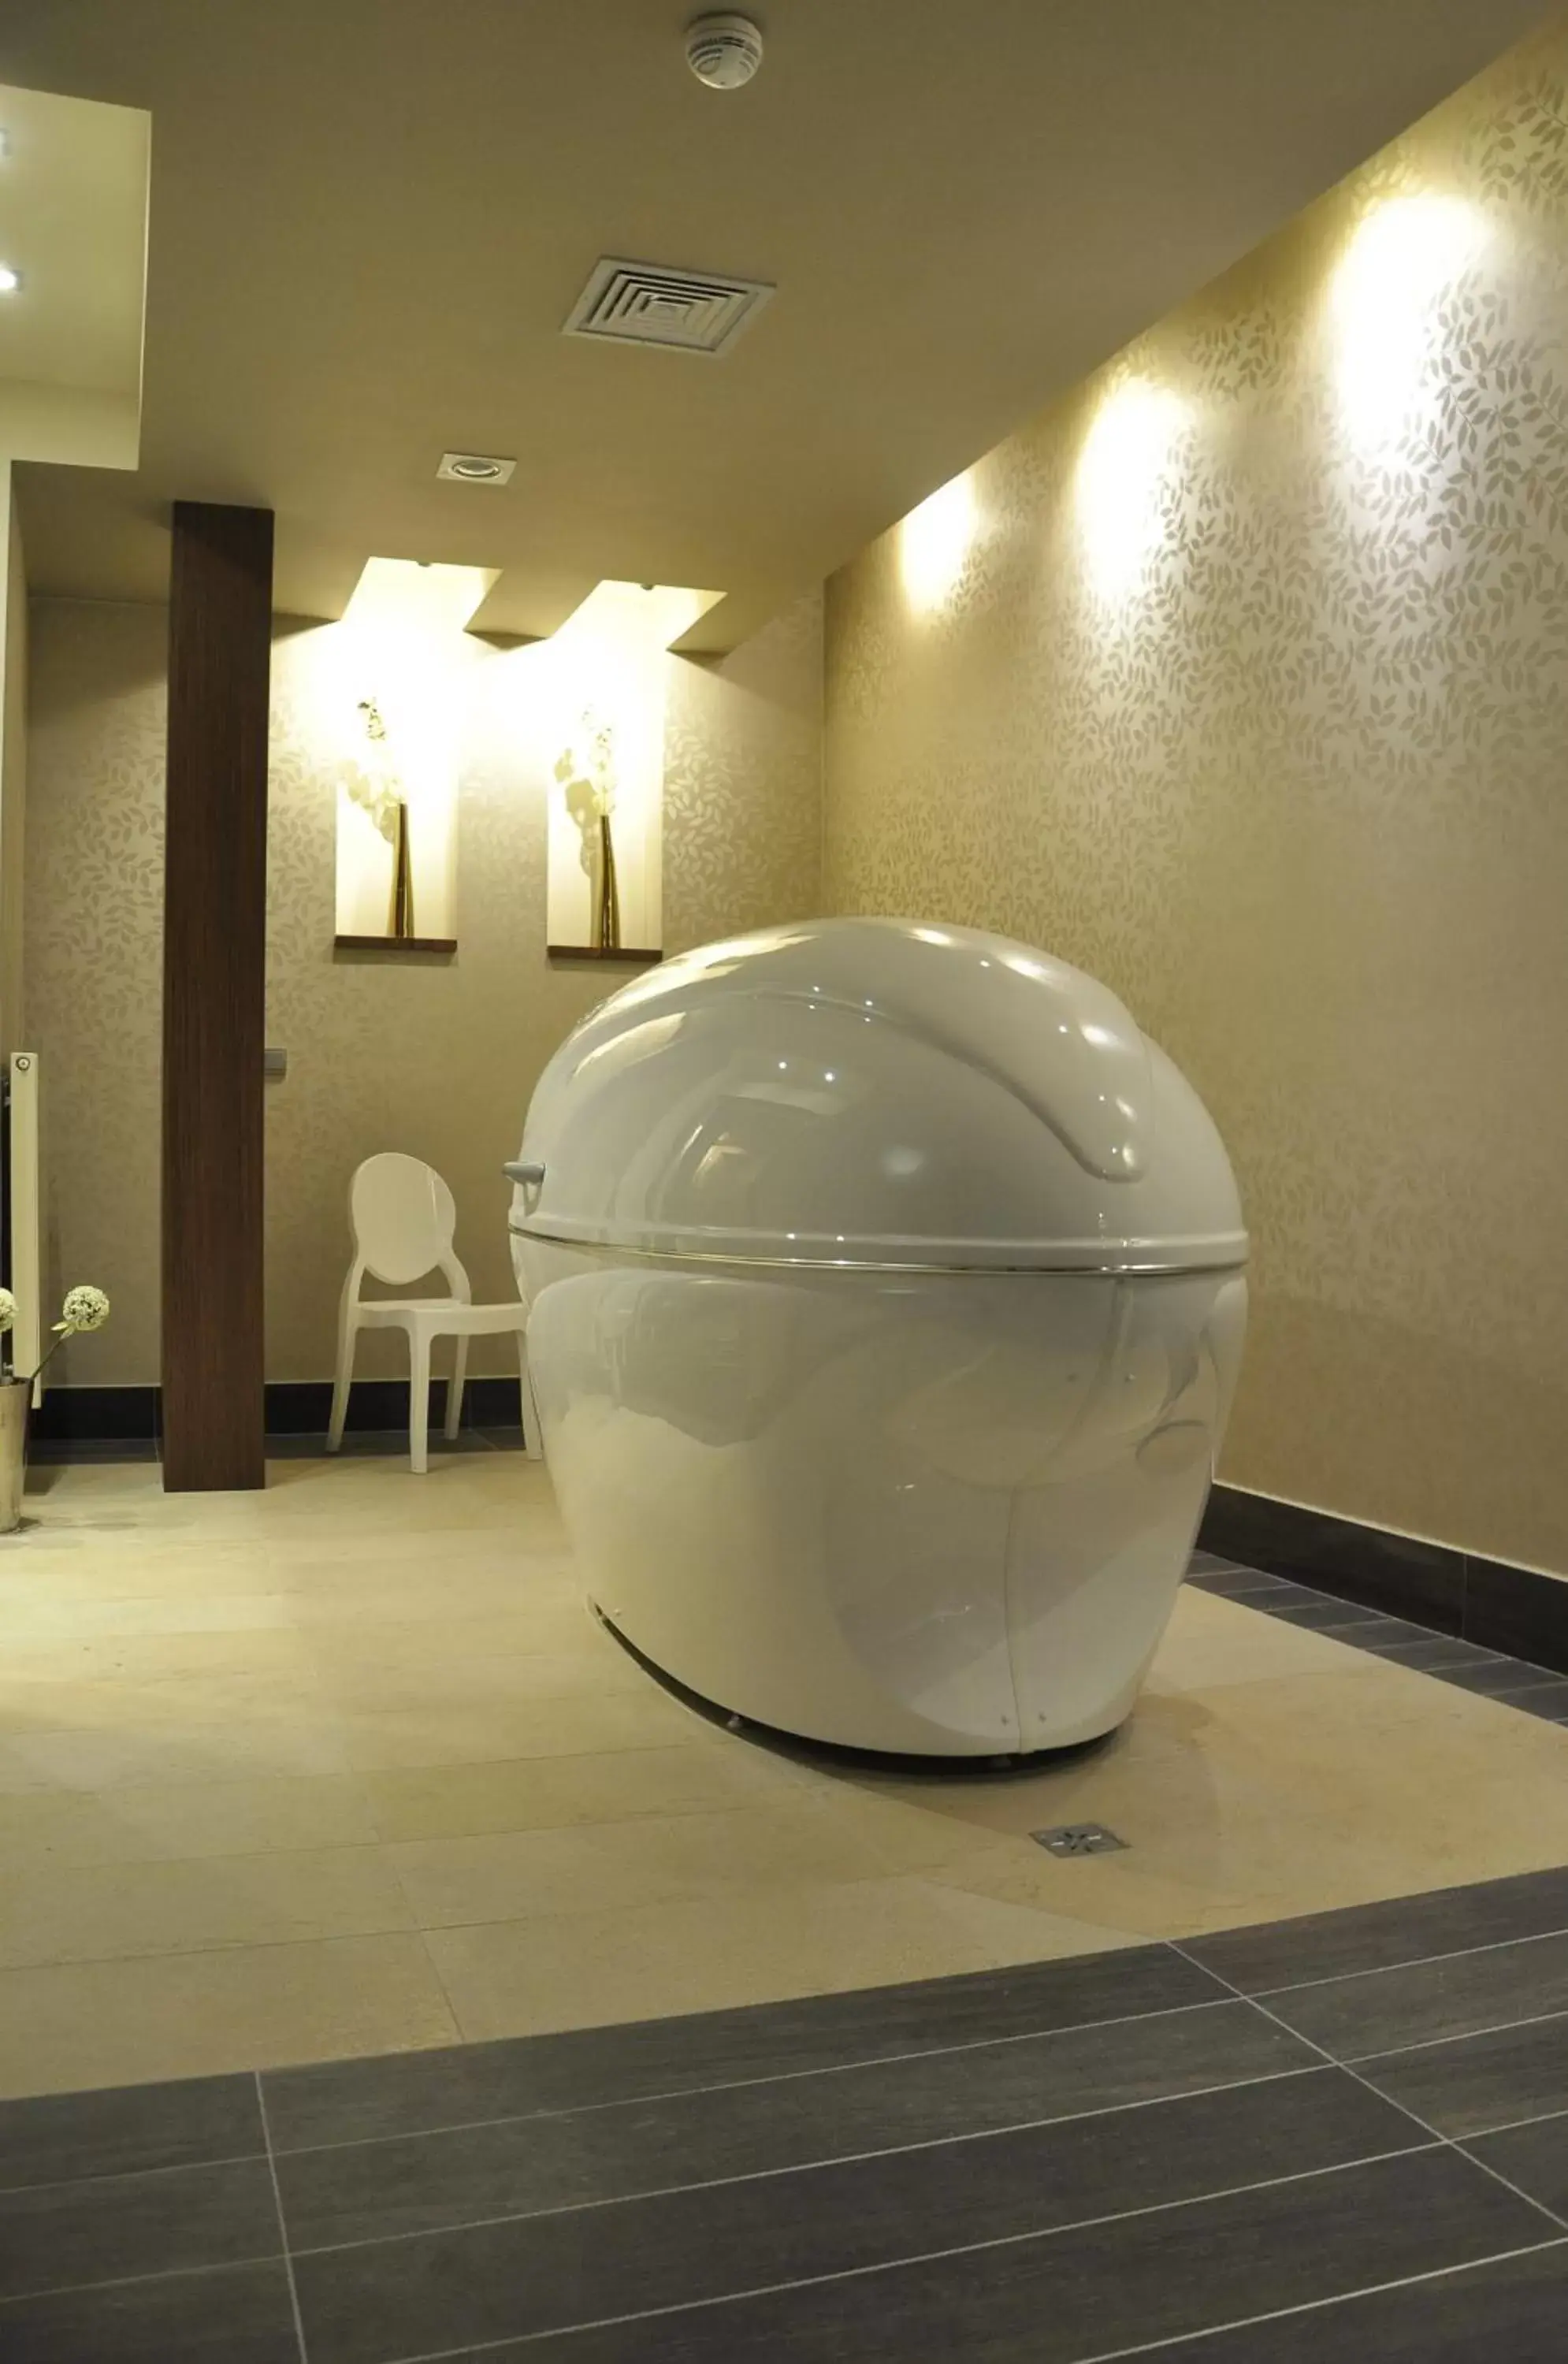 Spa and wellness centre/facilities, Bathroom in Radocza Park Active & Spa